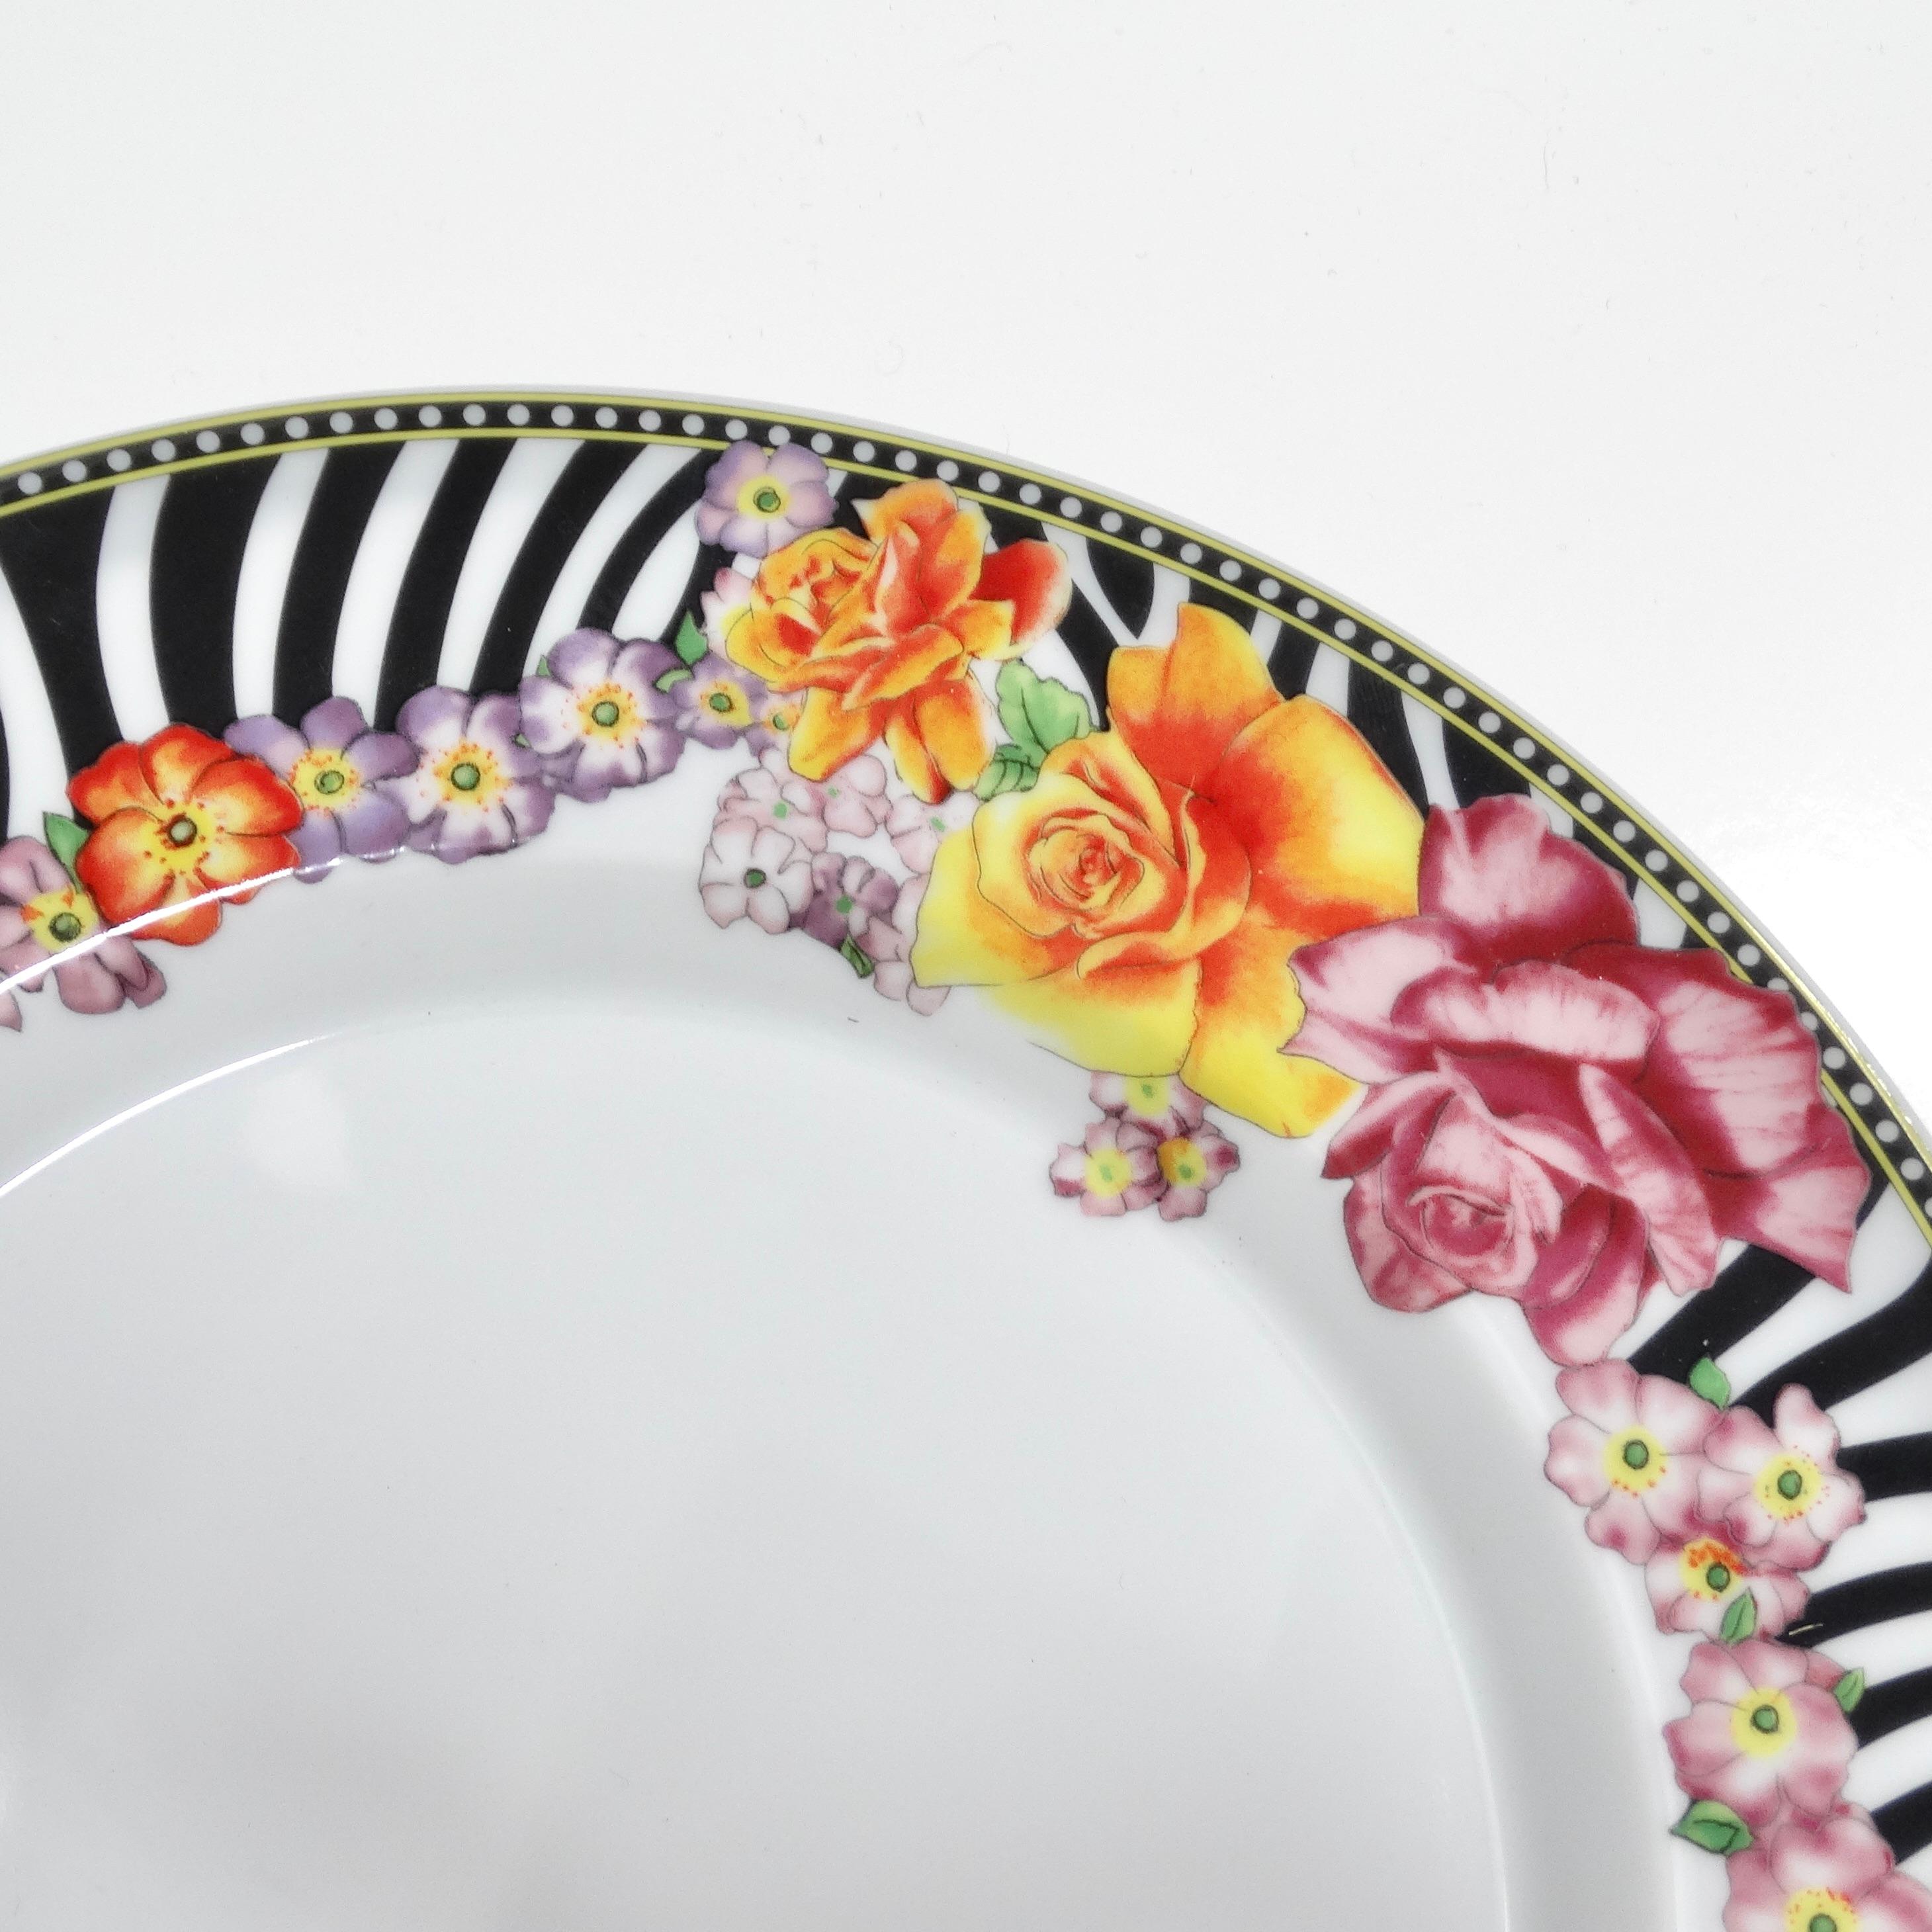 Le plat de service ovale en porcelaine des années 1990 de Versace Rosenthal, un chef-d'œuvre de 14 pouces qui ajoute une touche d'opulence et de fantaisie à votre table, rehaussera votre expérience culinaire. Réalisé dans les moindres détails, ce